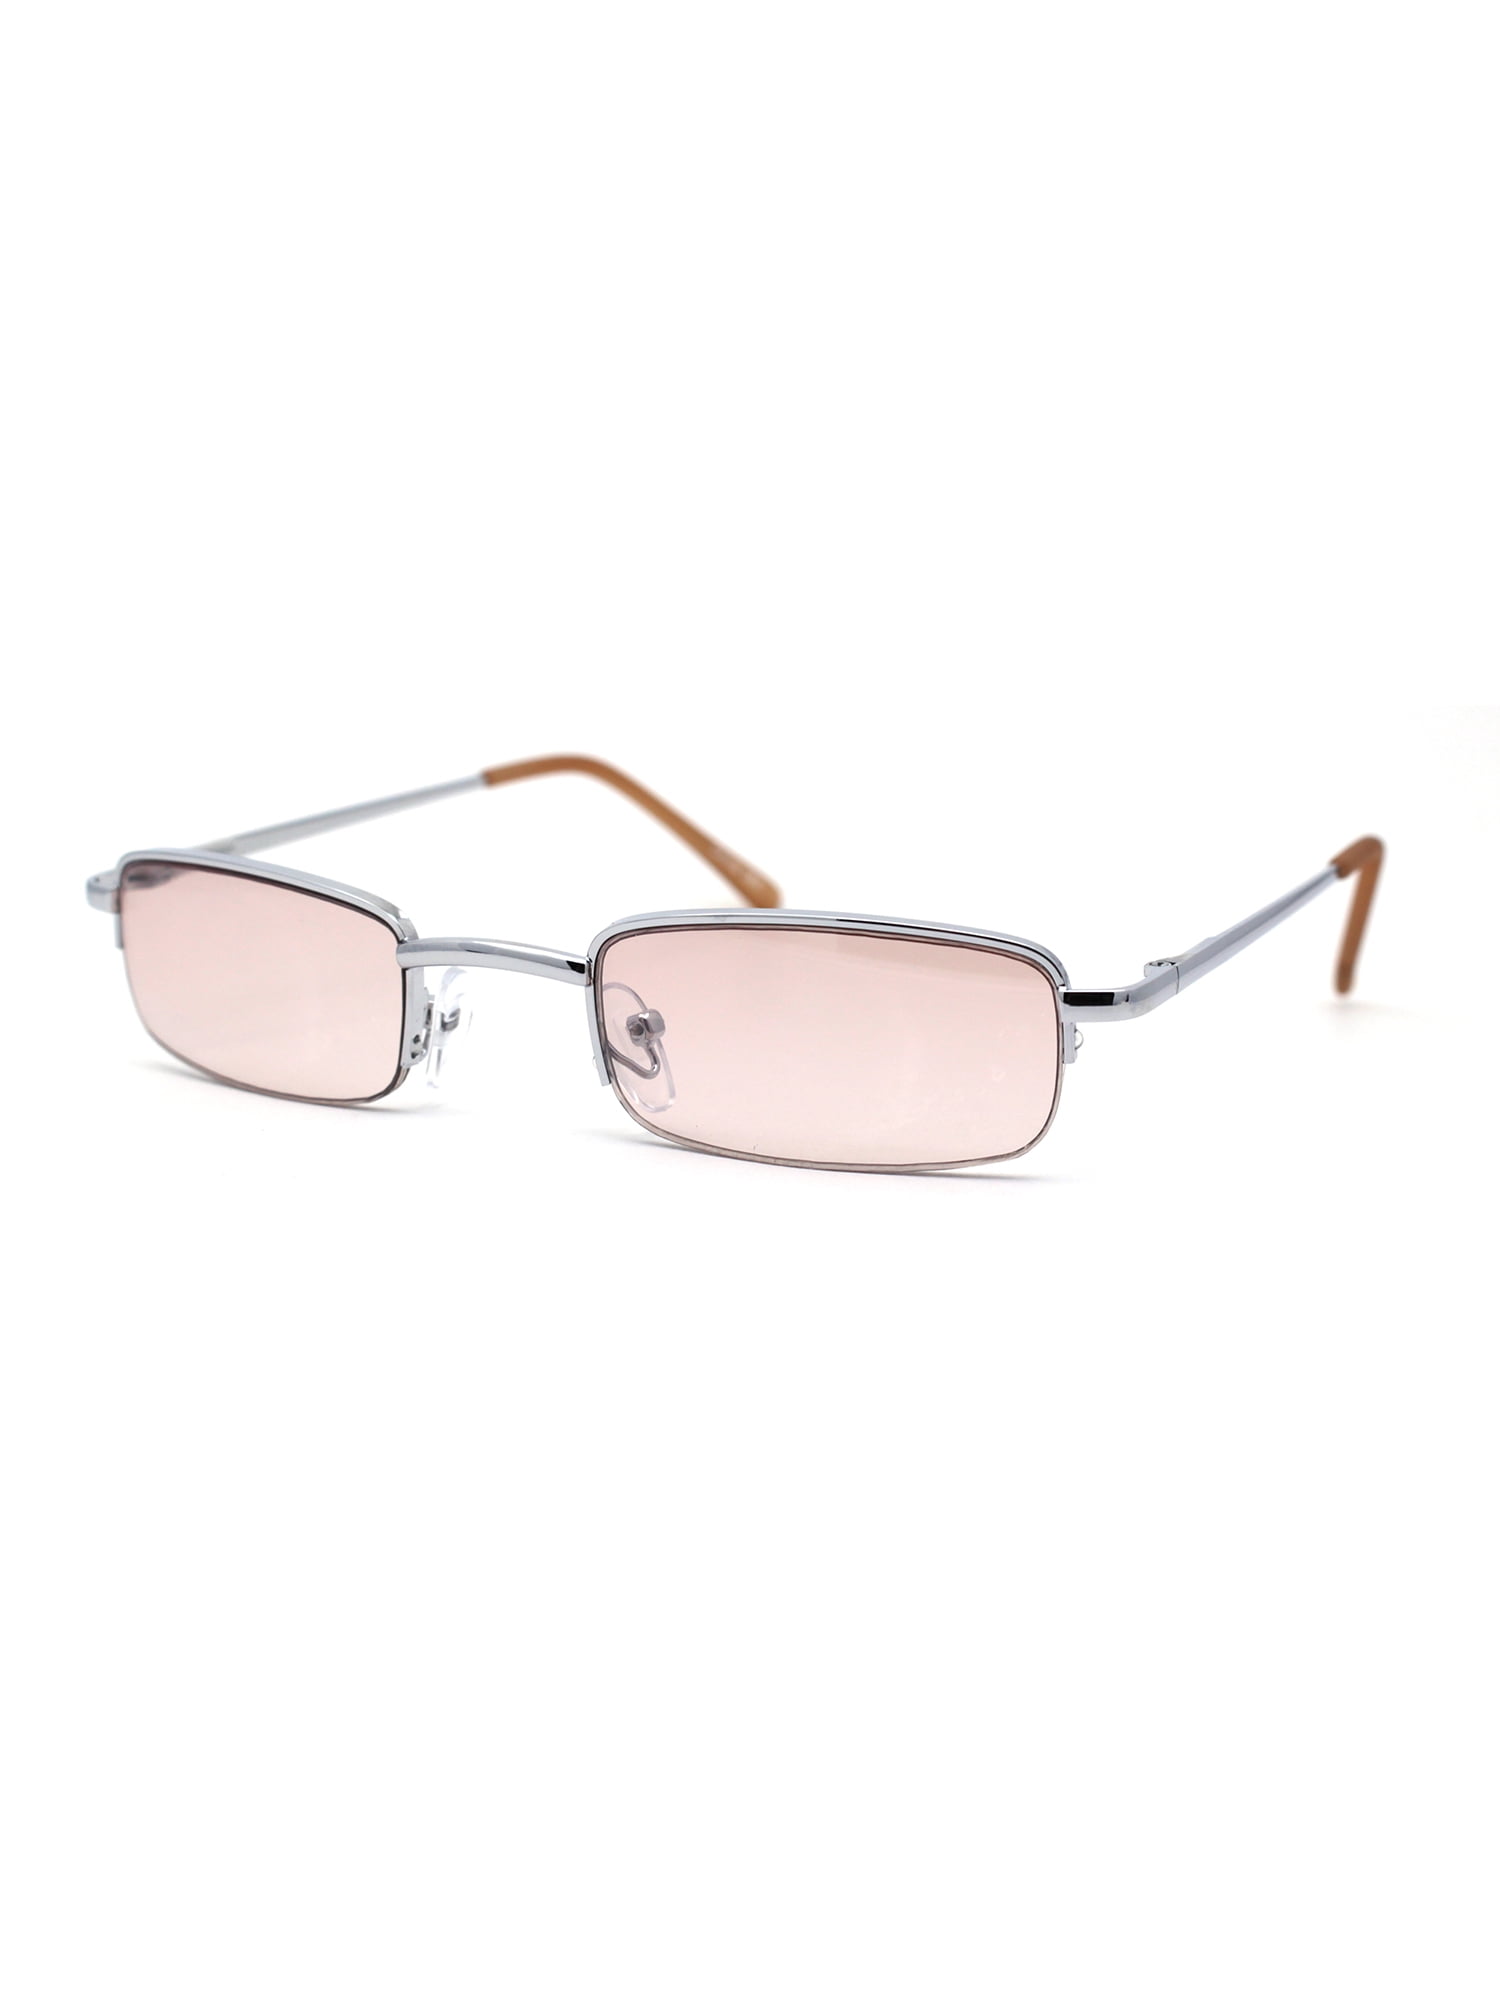 Zign UNISEX - Sunglasses - silver-coloured - Zalando.de